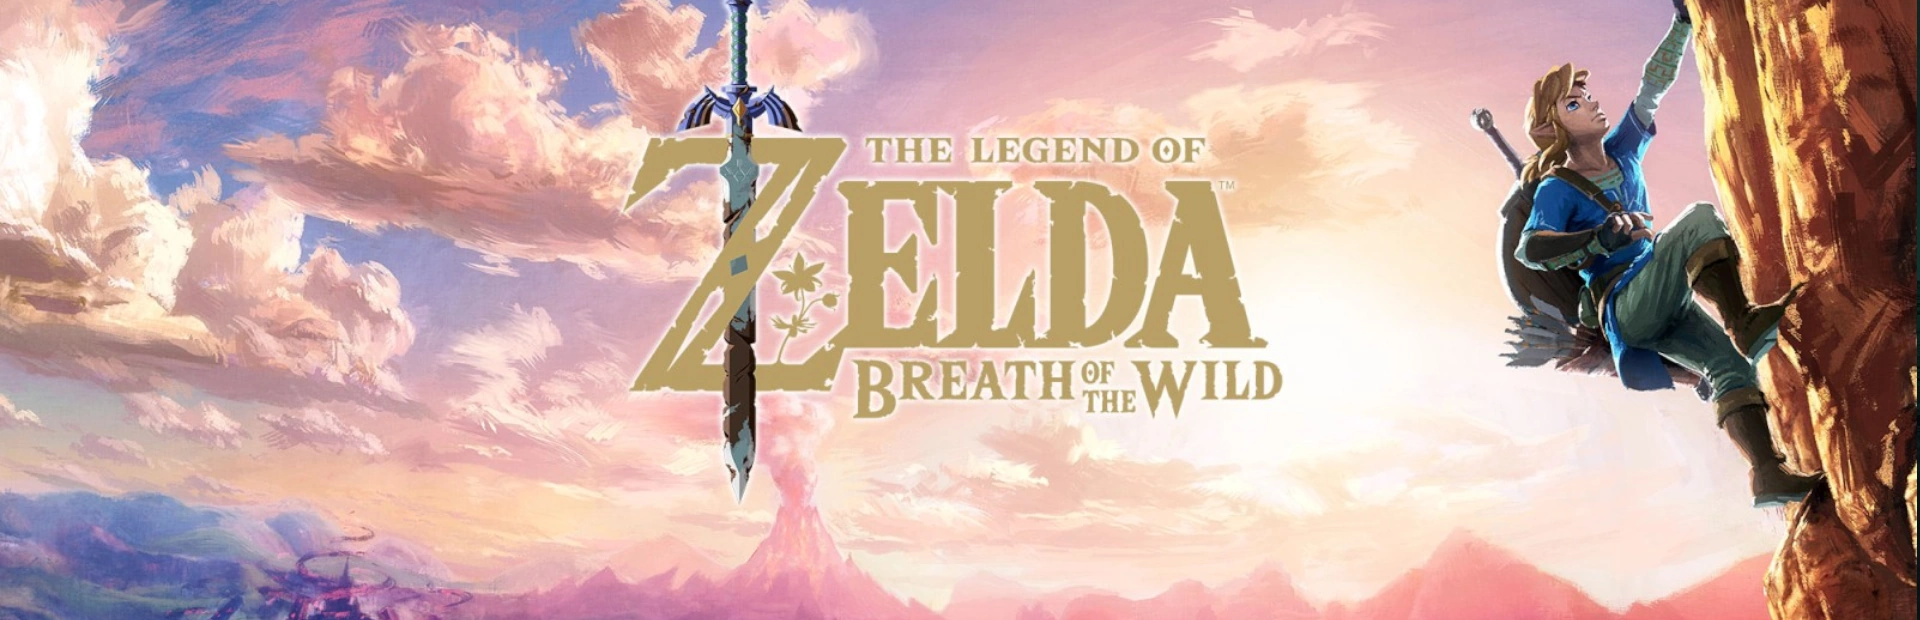 دانلود بازیThe Legend of Zelda: Breath برای کامپیوتر|گیمباتو